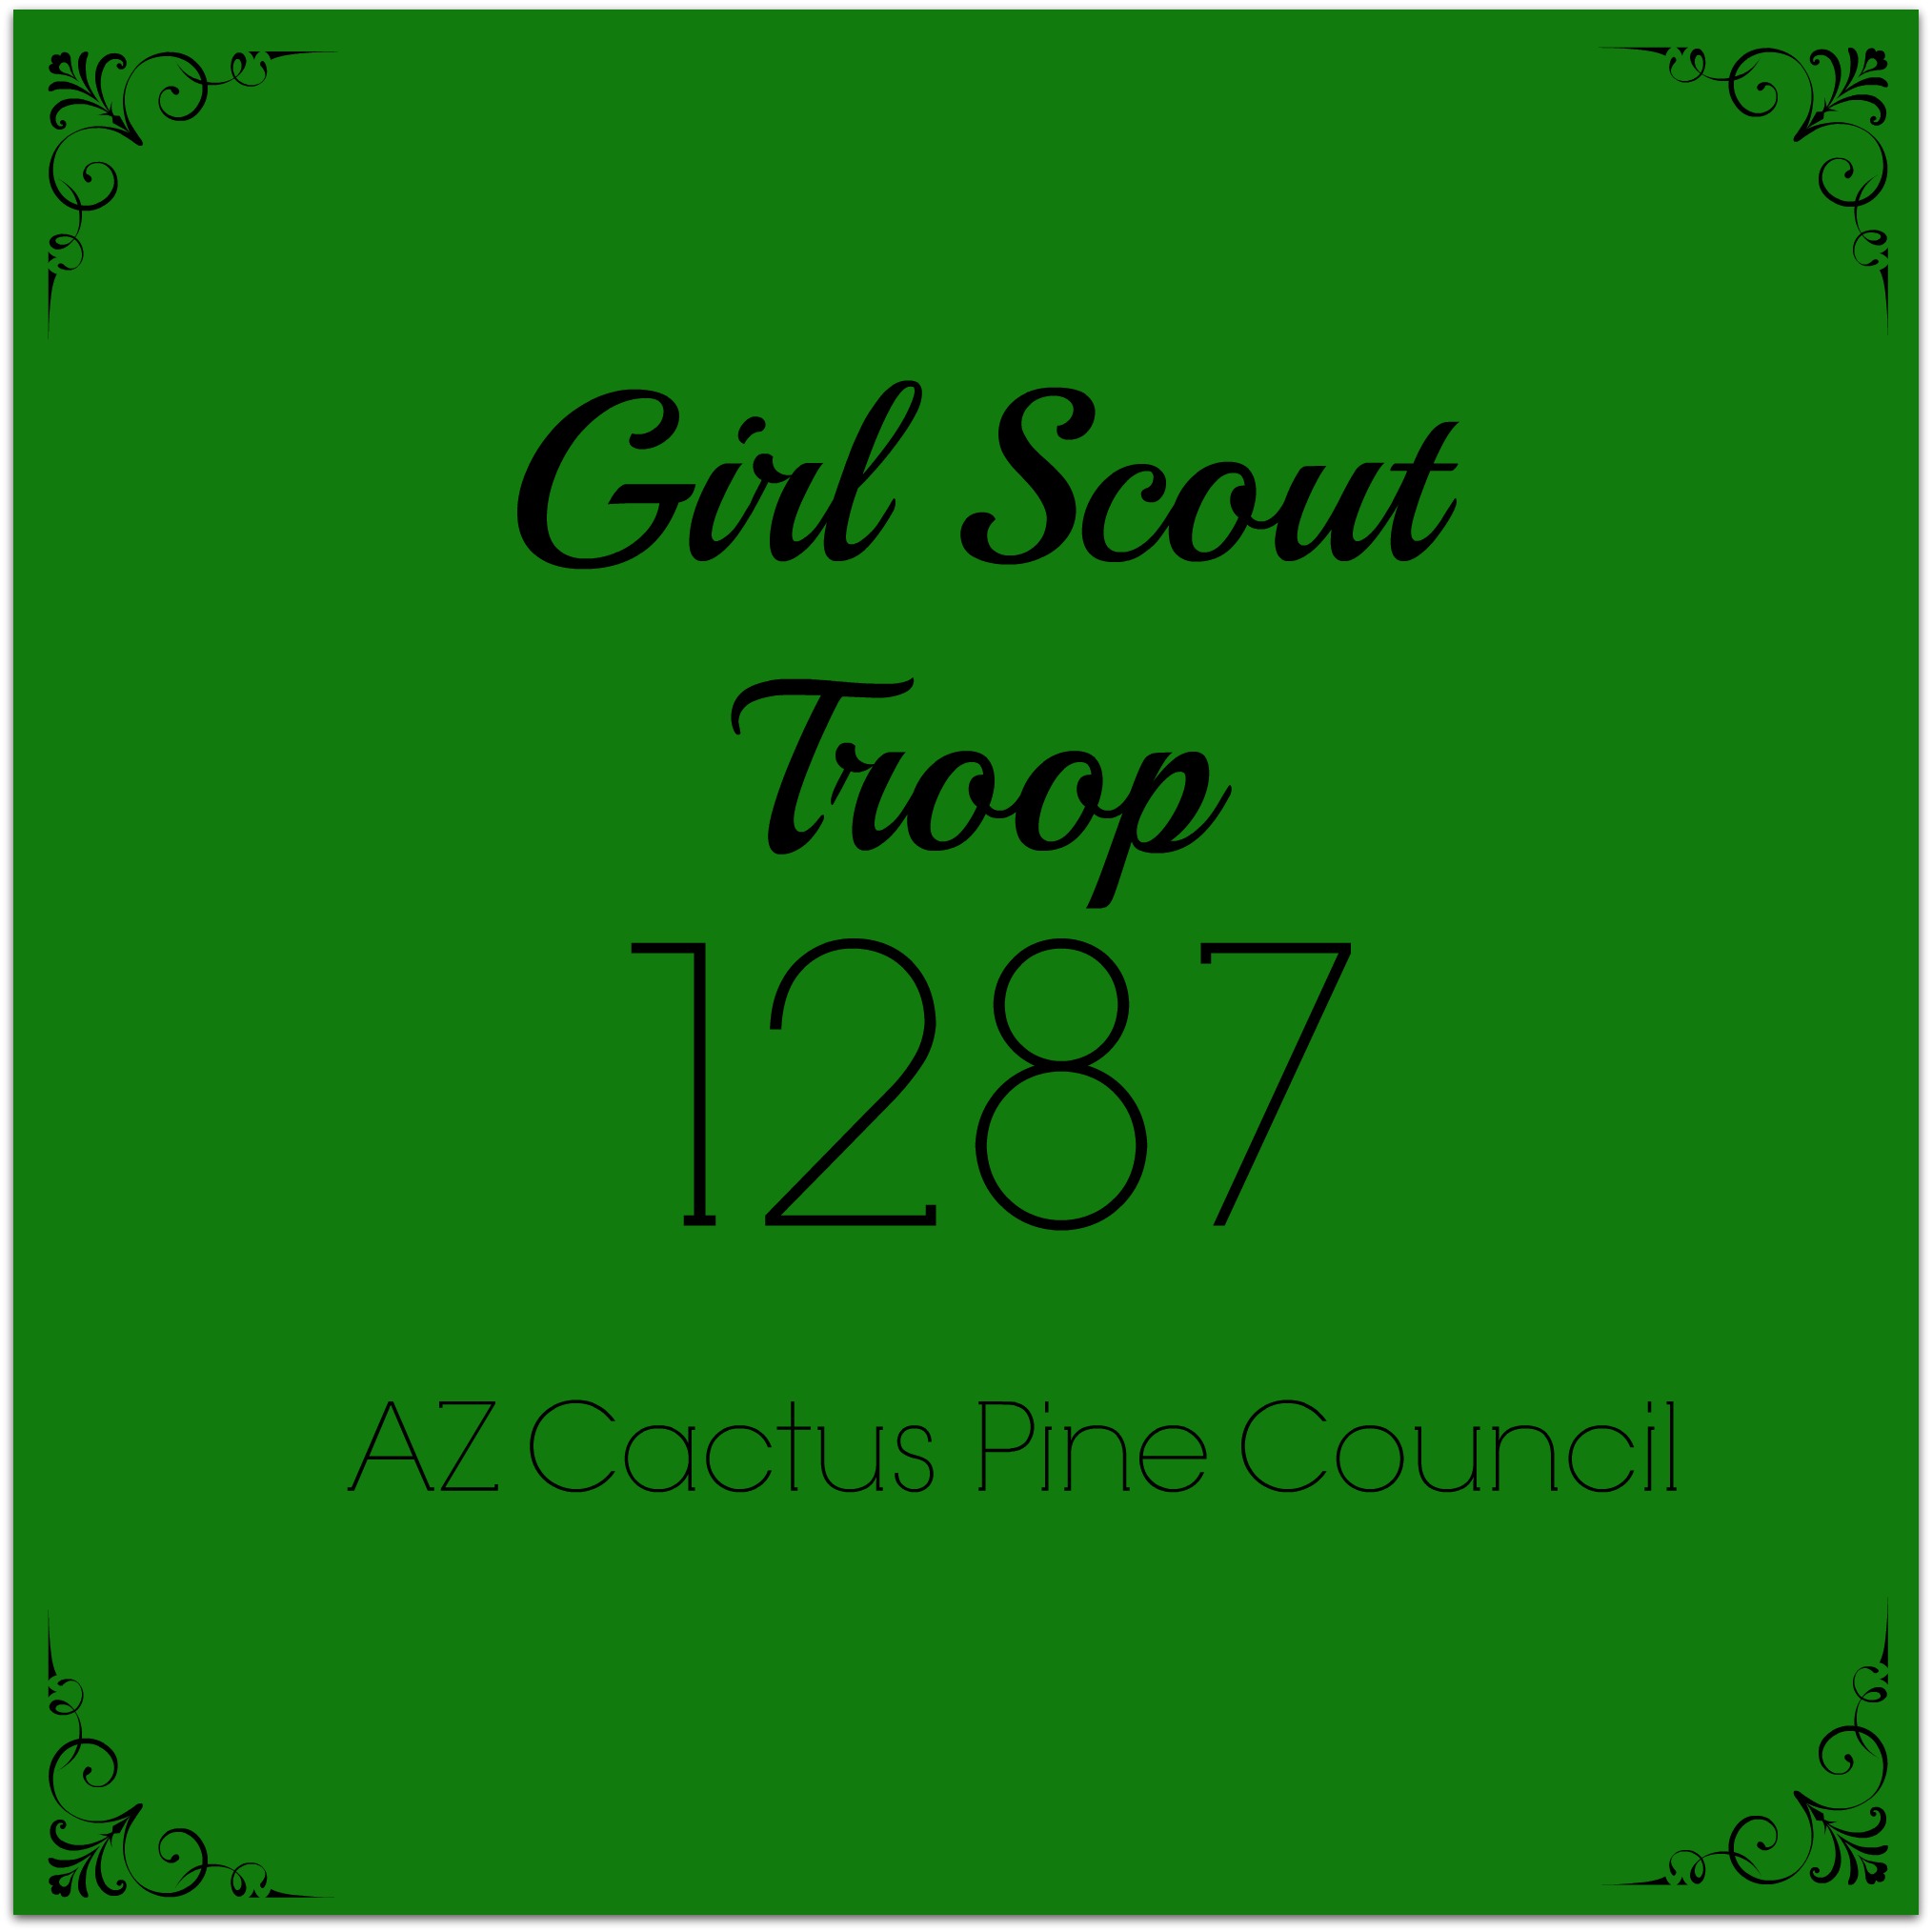 Troop 1287 